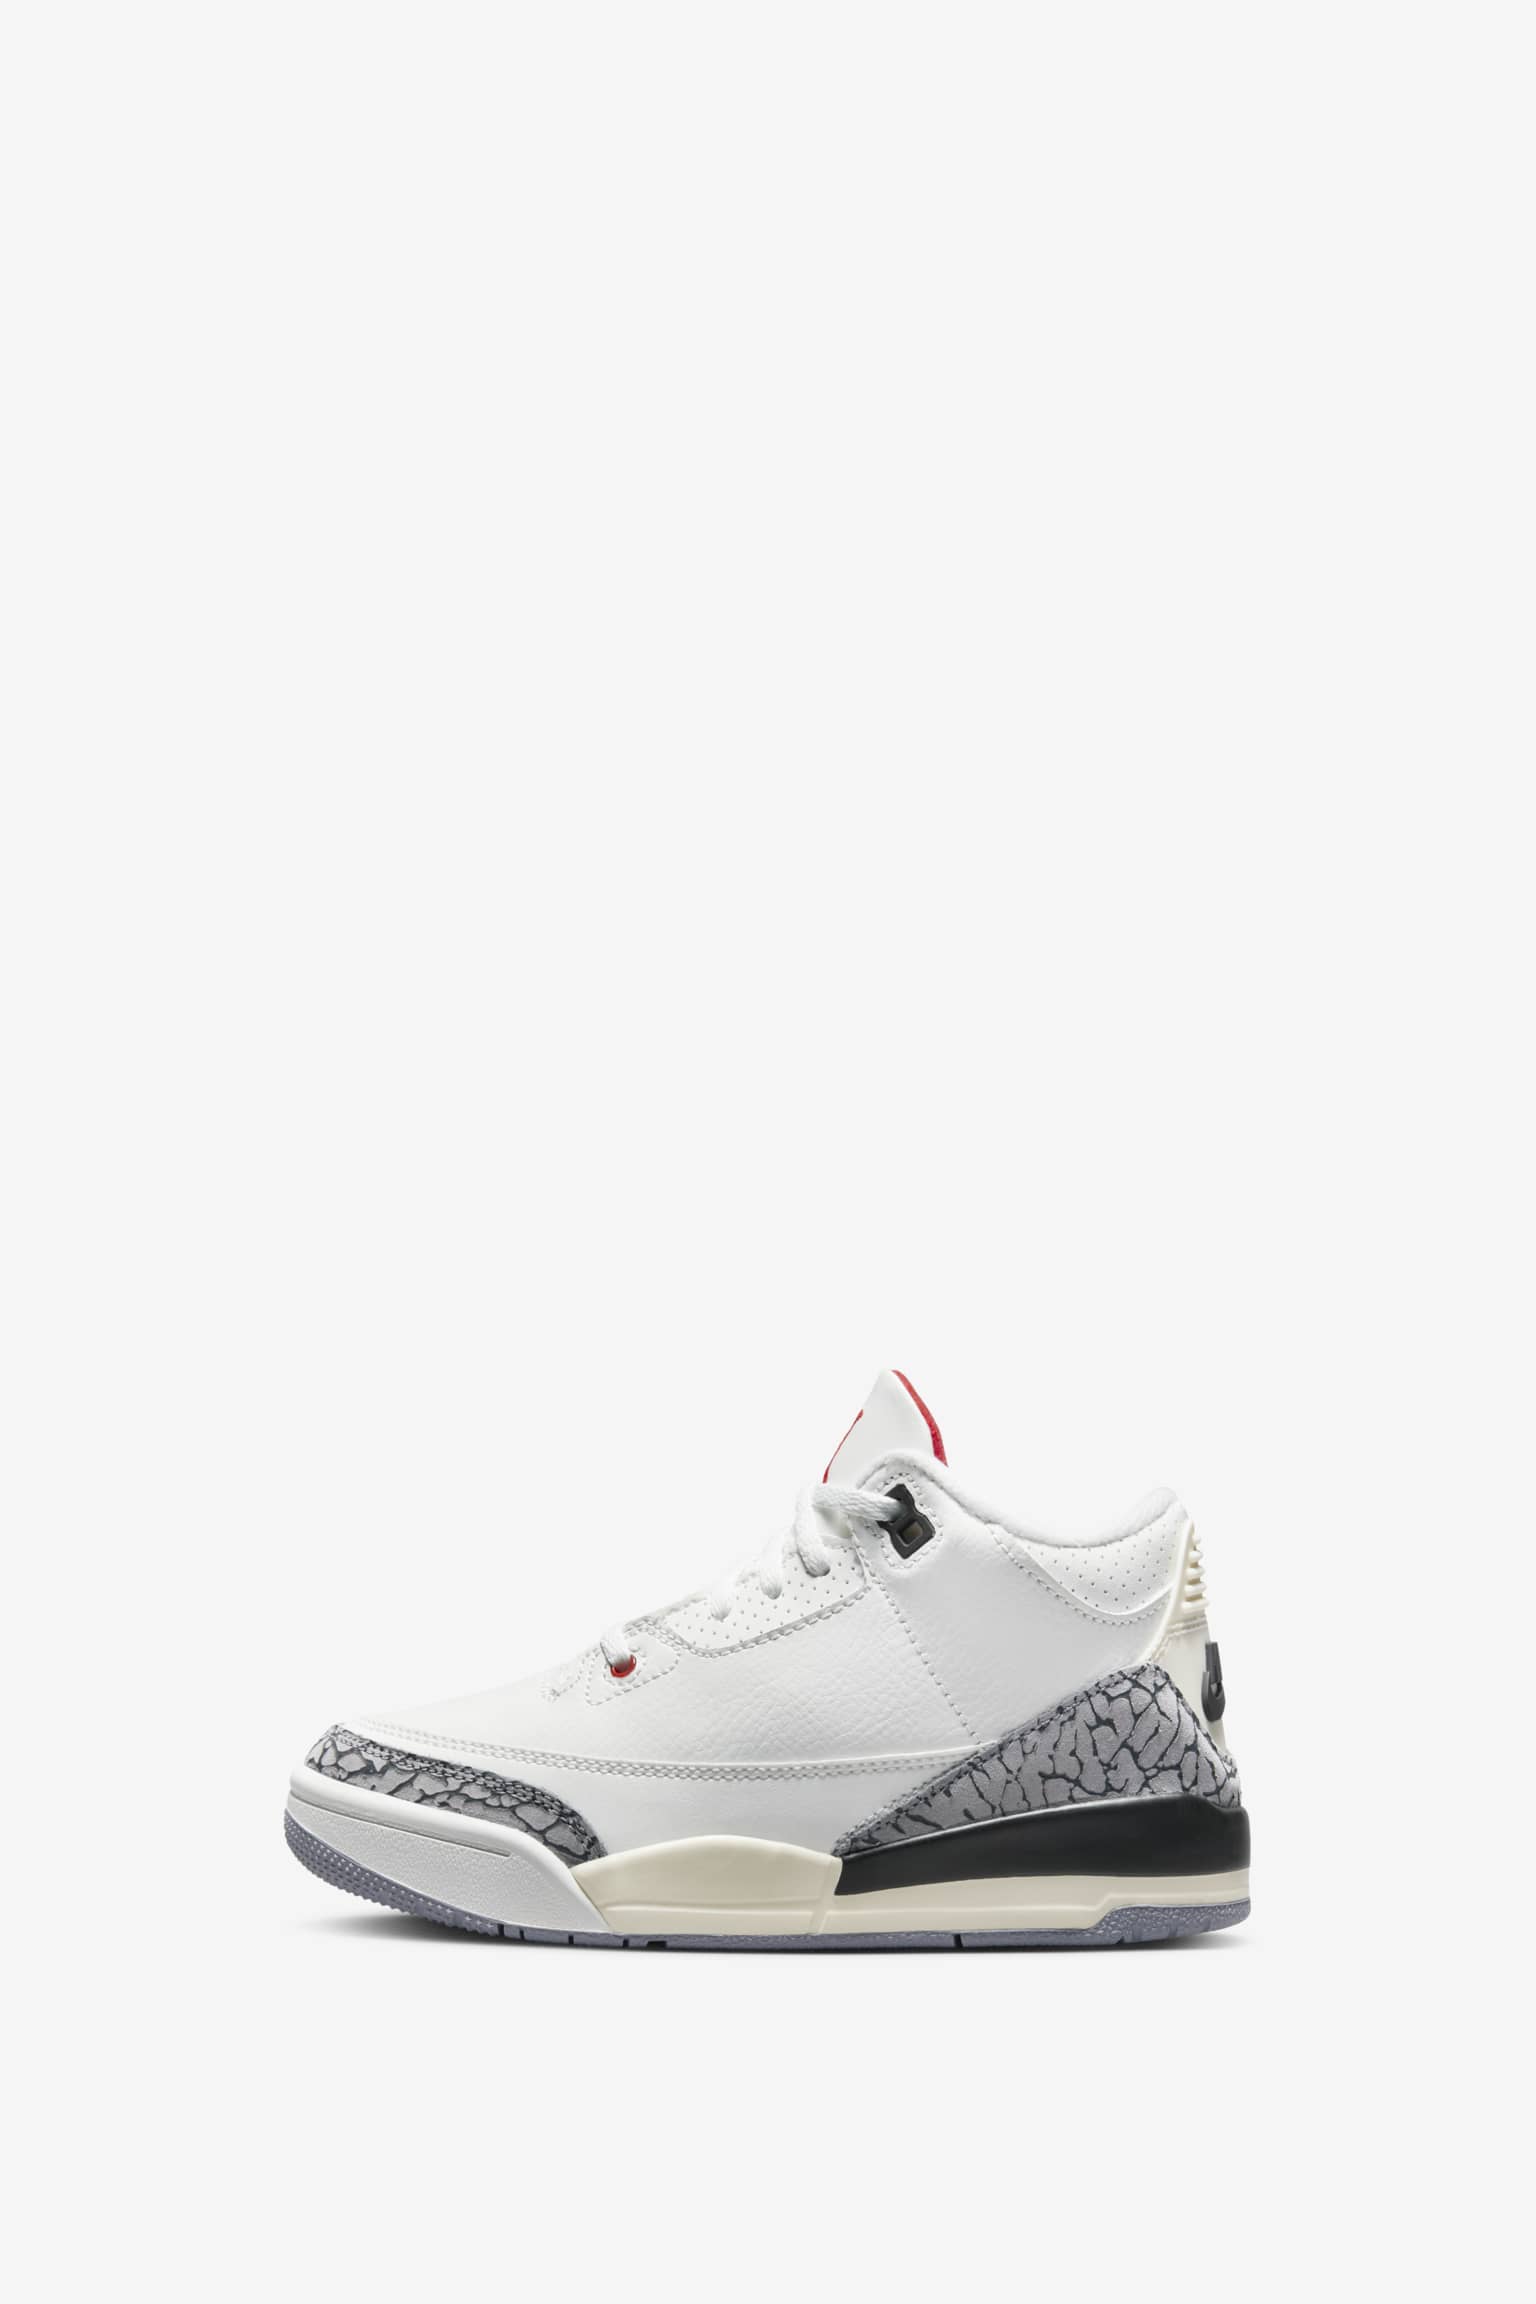 Air Jordan 3 Reimagined 27.0 未使用品靴/シューズ